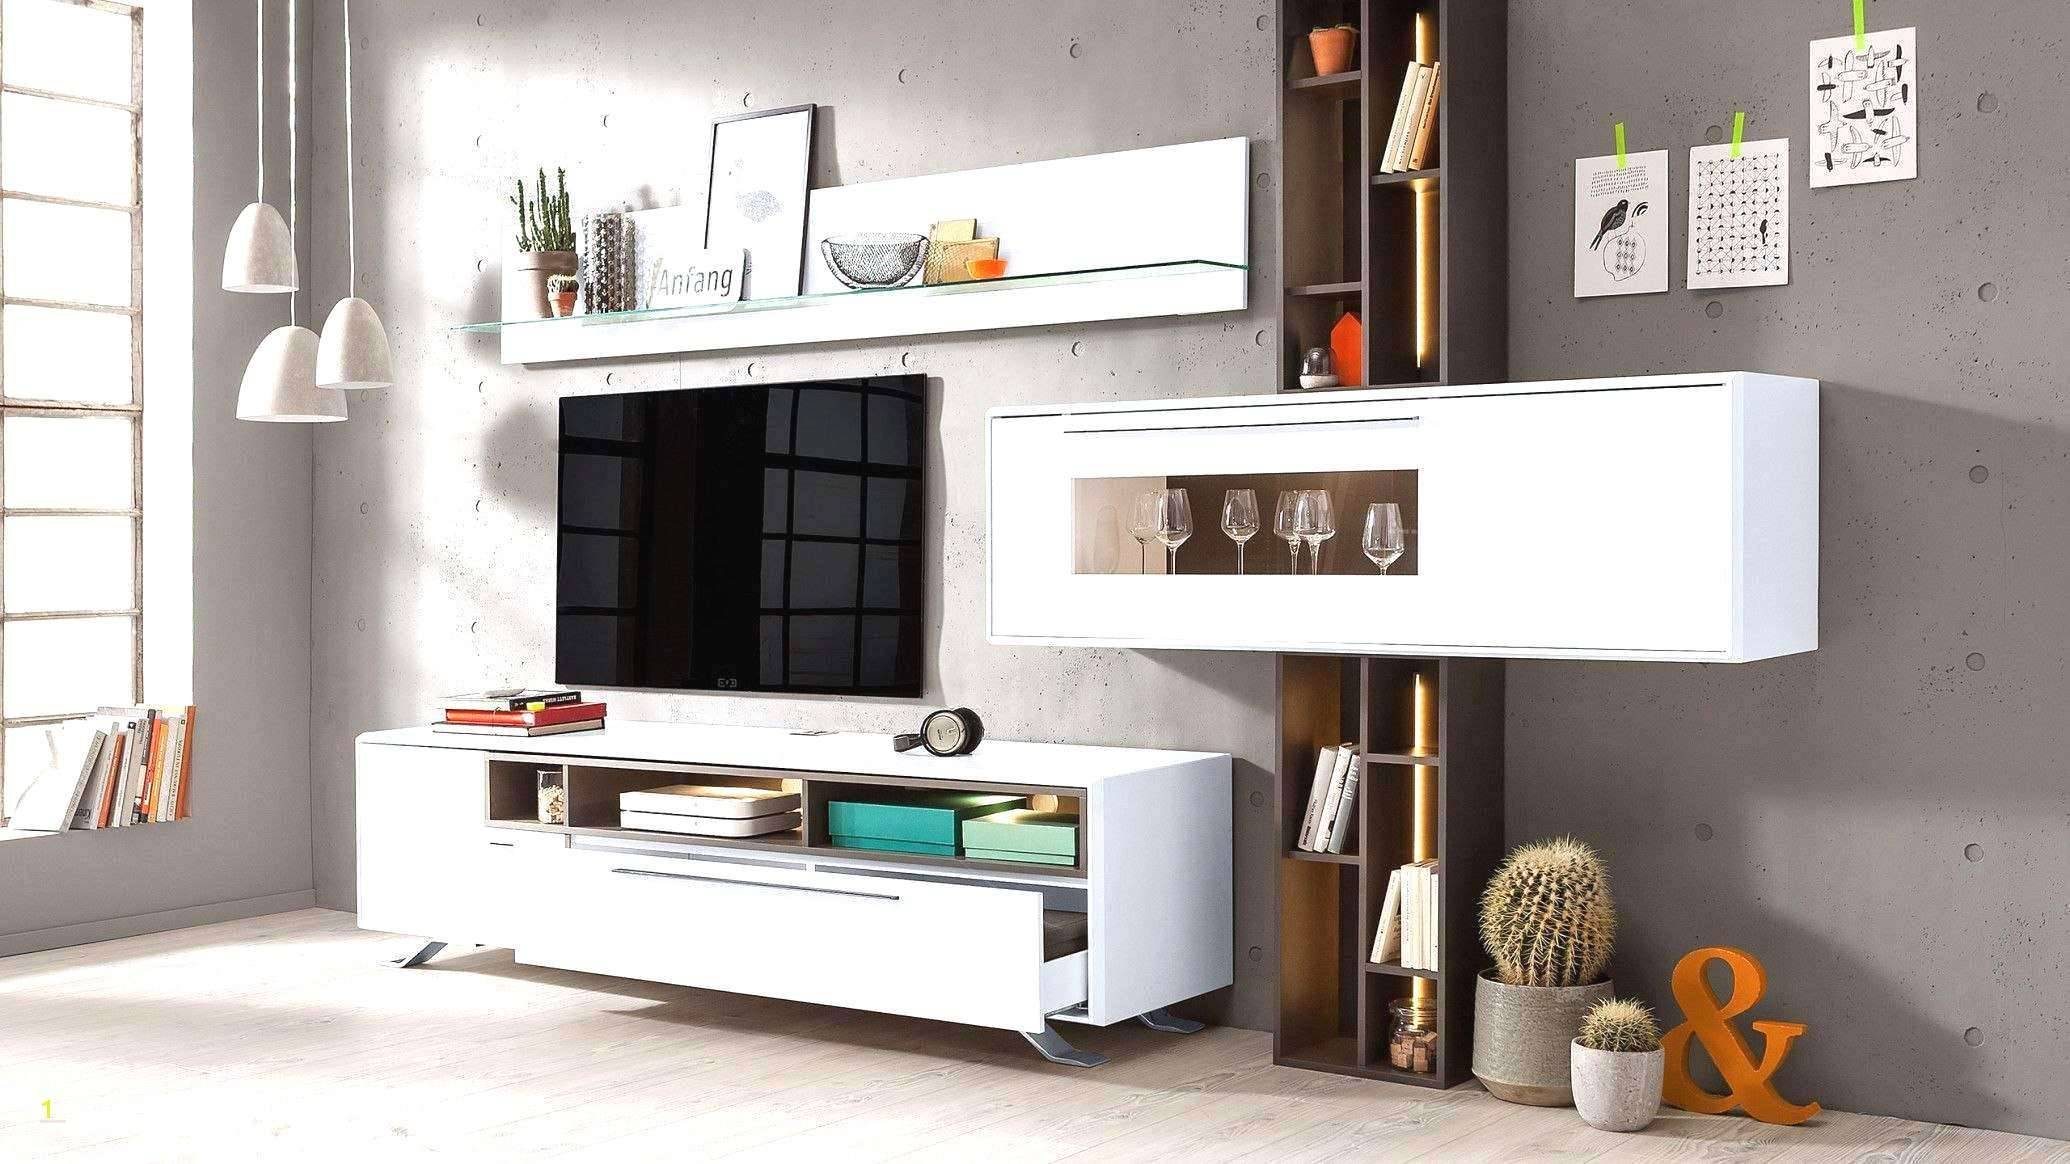 Dekorieren Mit Holzkisten Best Of Luxury Deko Ideen Selbermachen Wohnzimmer Concept